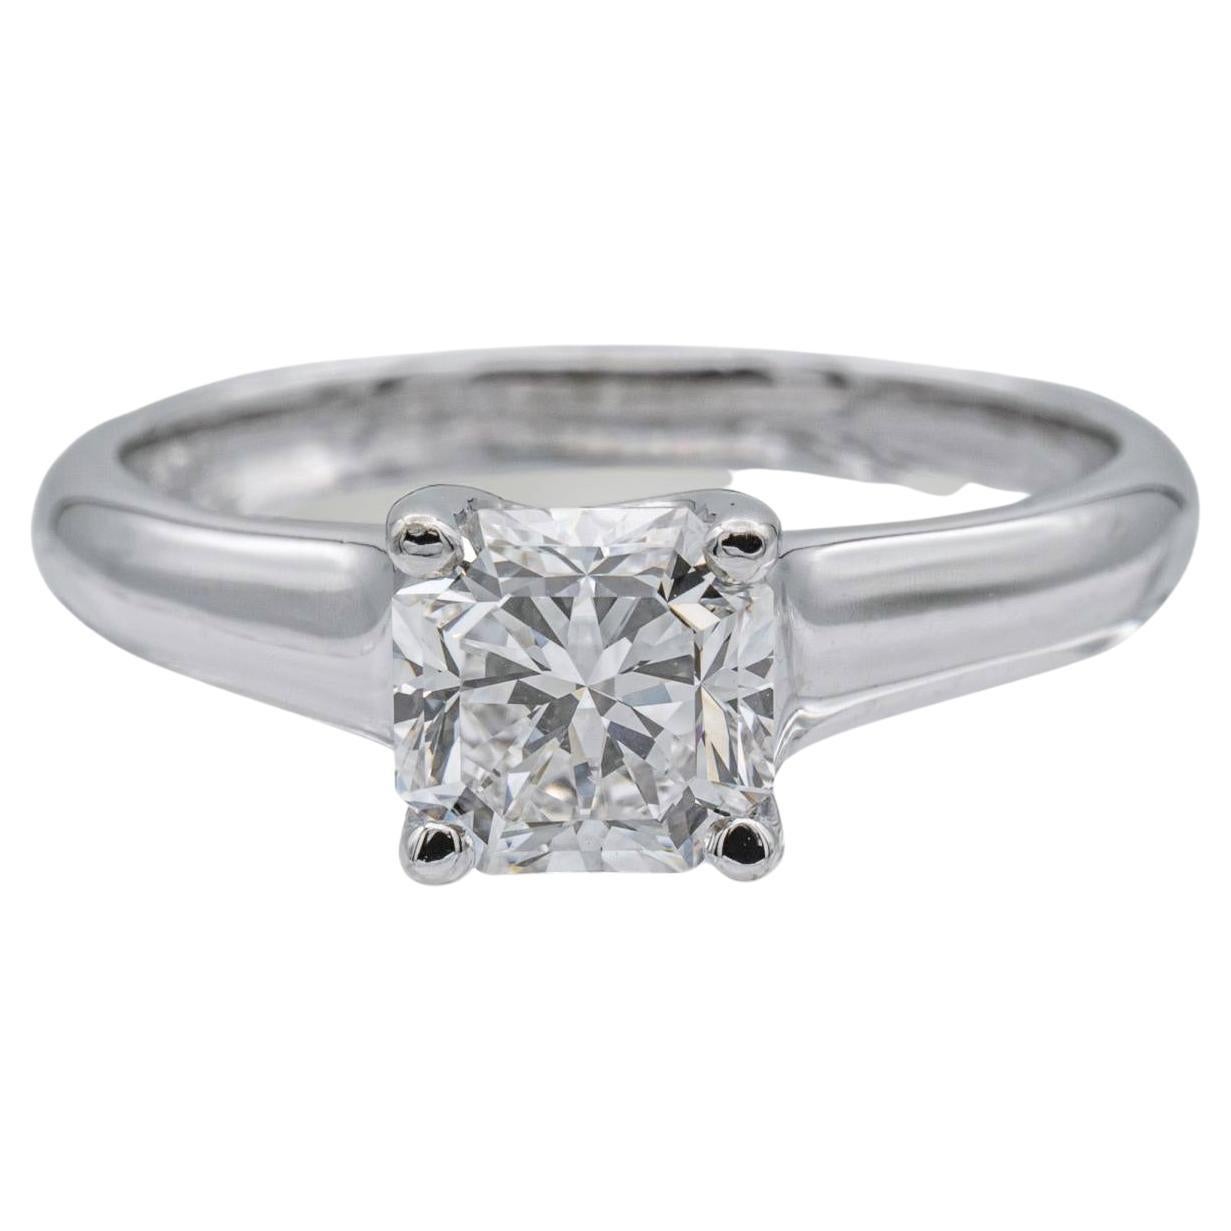 Tiffany & Co. Lucida Diamond Engagement Ring .87ct EVS2 in Platinum